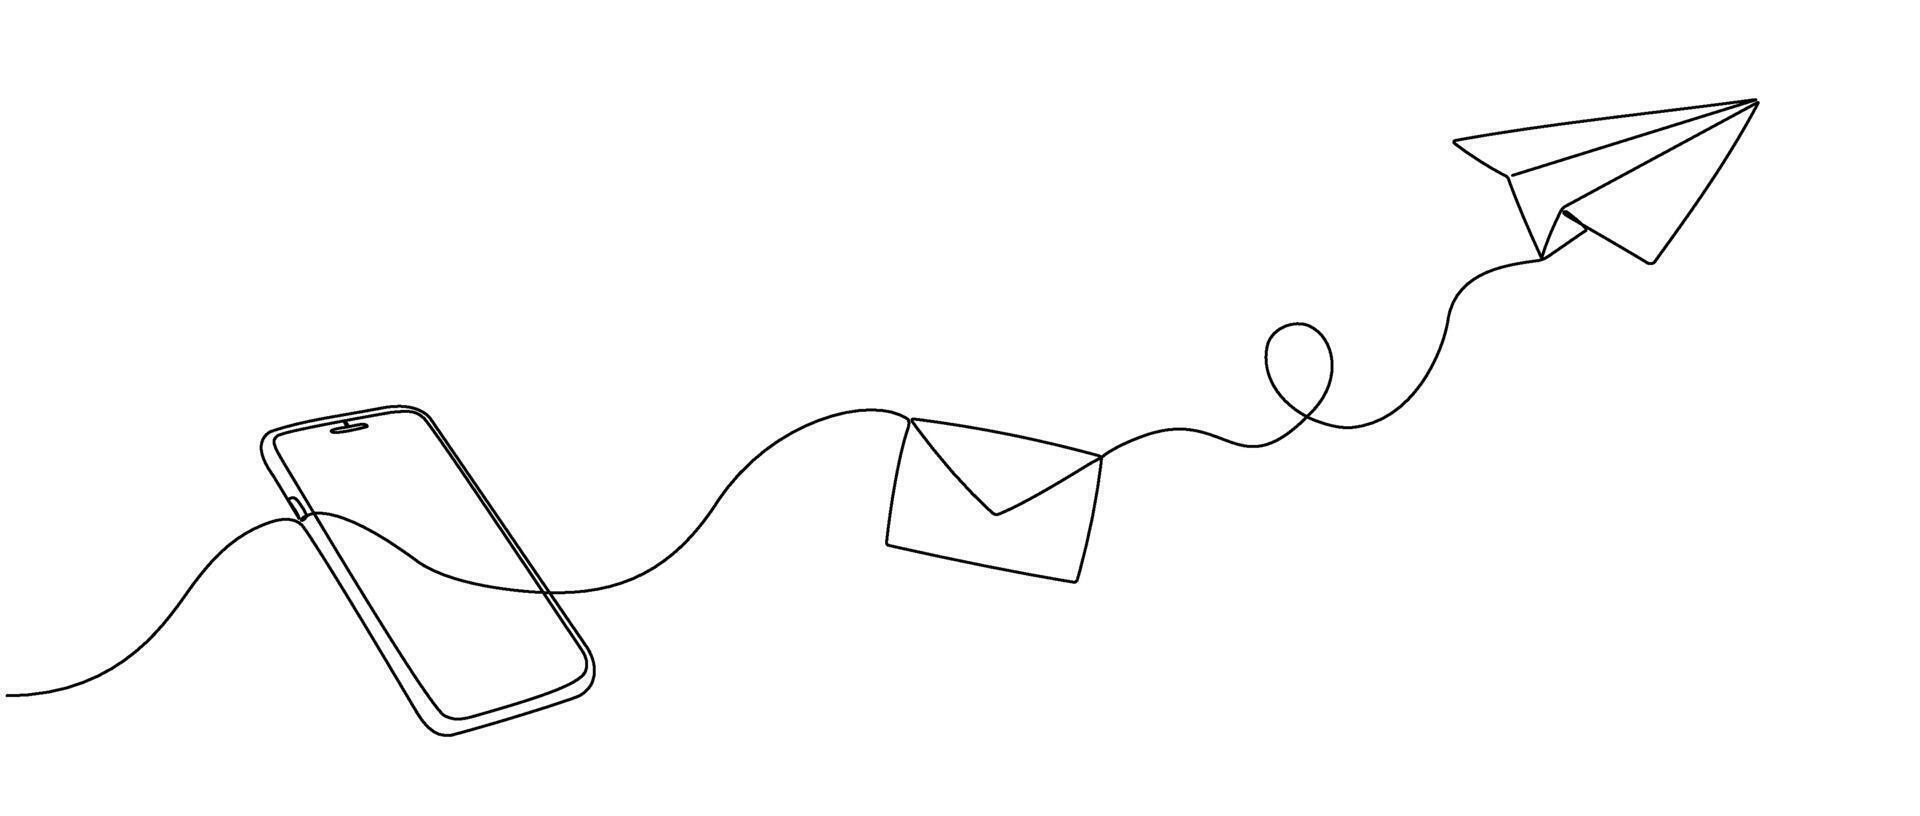 kontinuerlig enda linje redigerbar teckning av ett kuvert flygande ut och en papper flygplan från en smartphone. begrepp av mobil chatt meddelanden, i enkel klotter stil. vektor illustration.